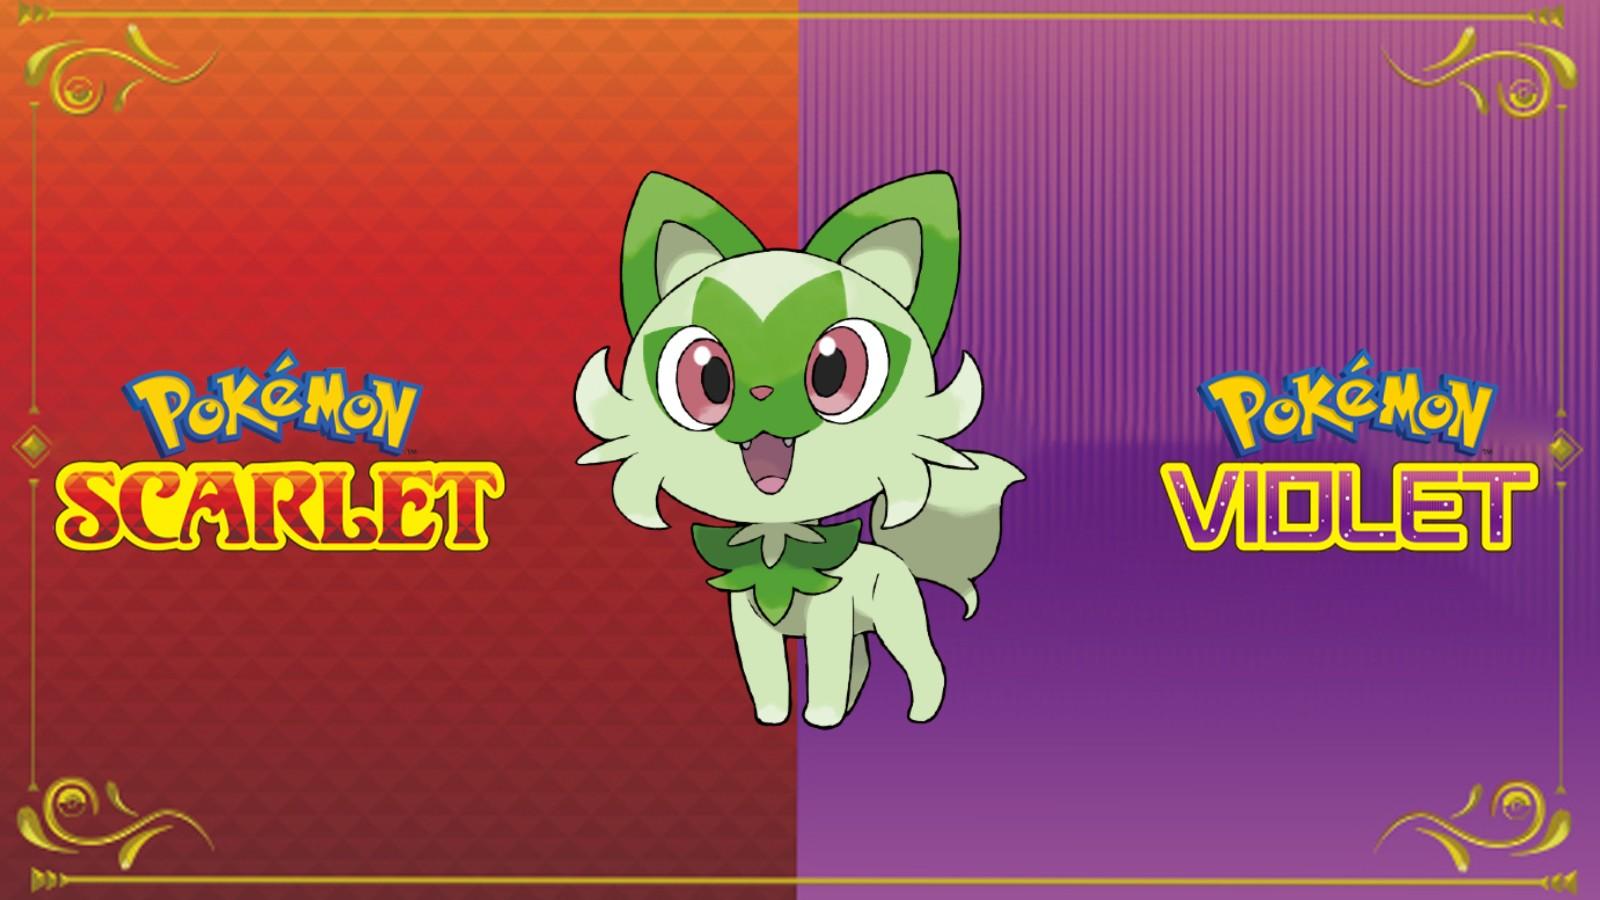 Sprigatito Pokemon Scarlet & Violet